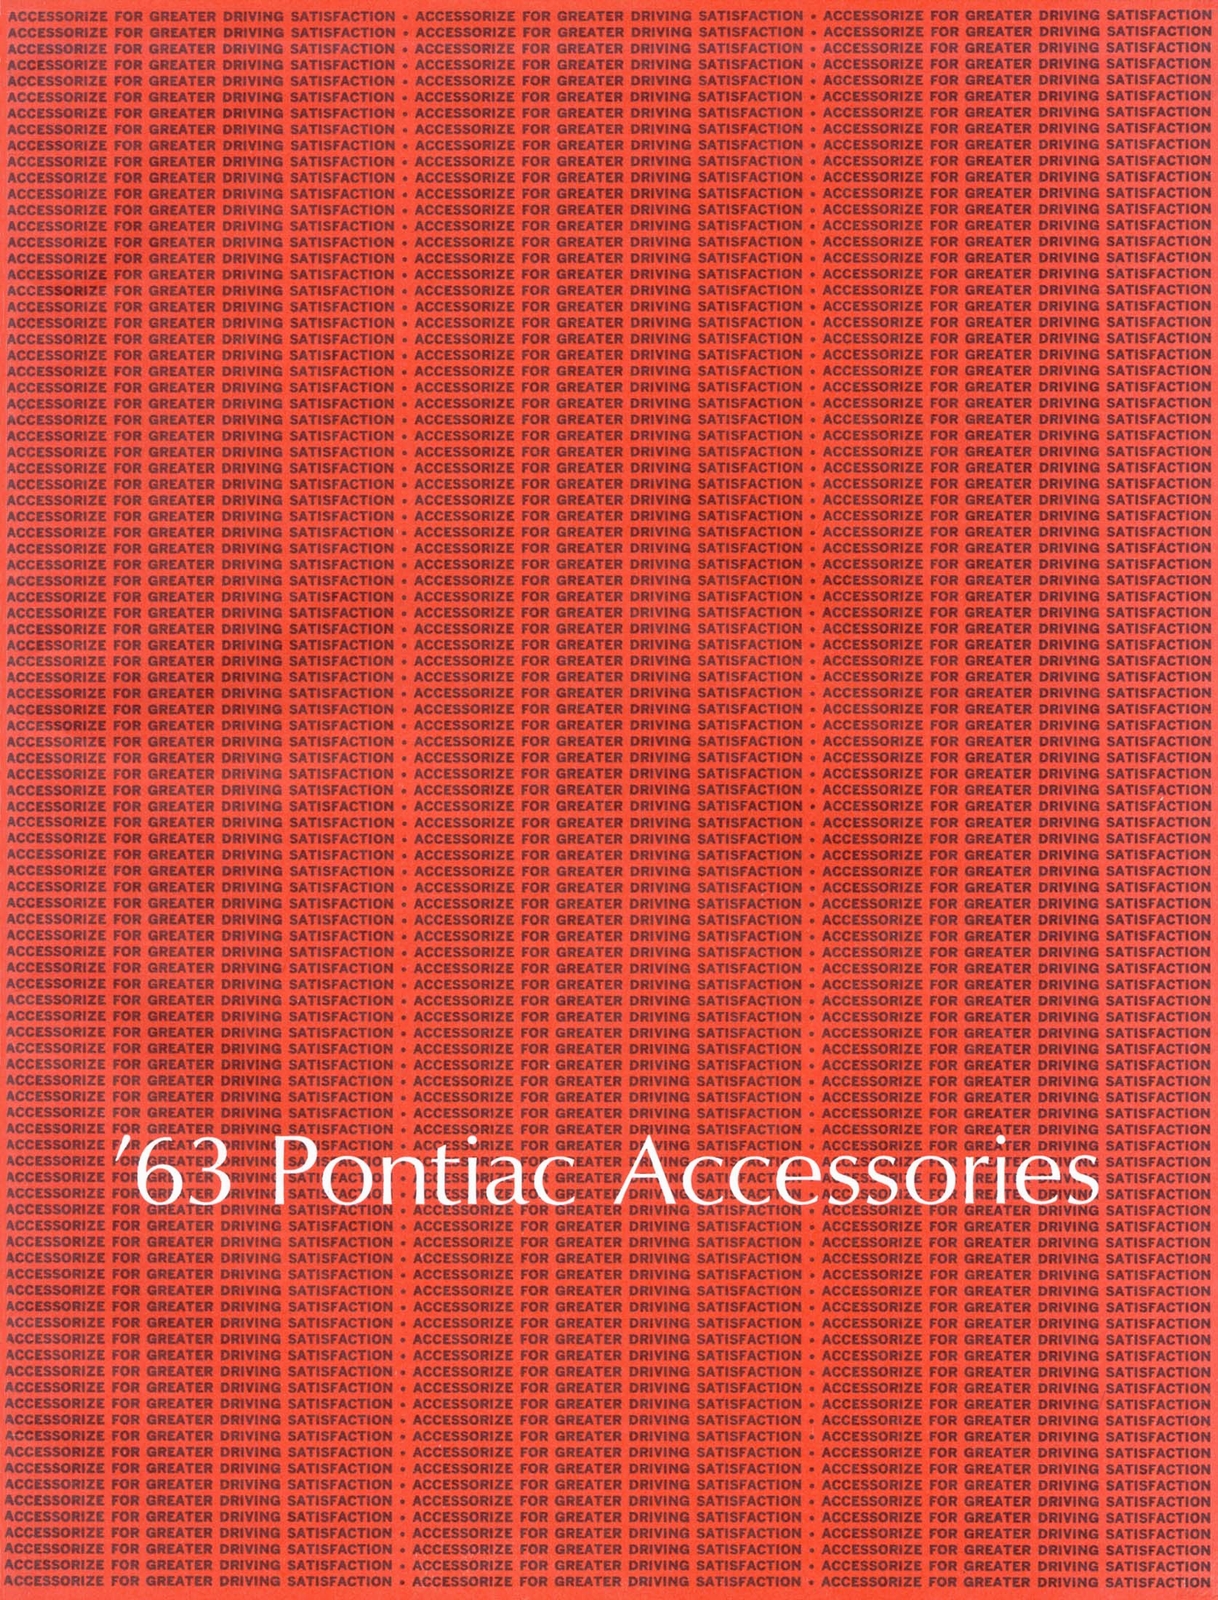 n_1963 Pontiac Accessories-01.jpg